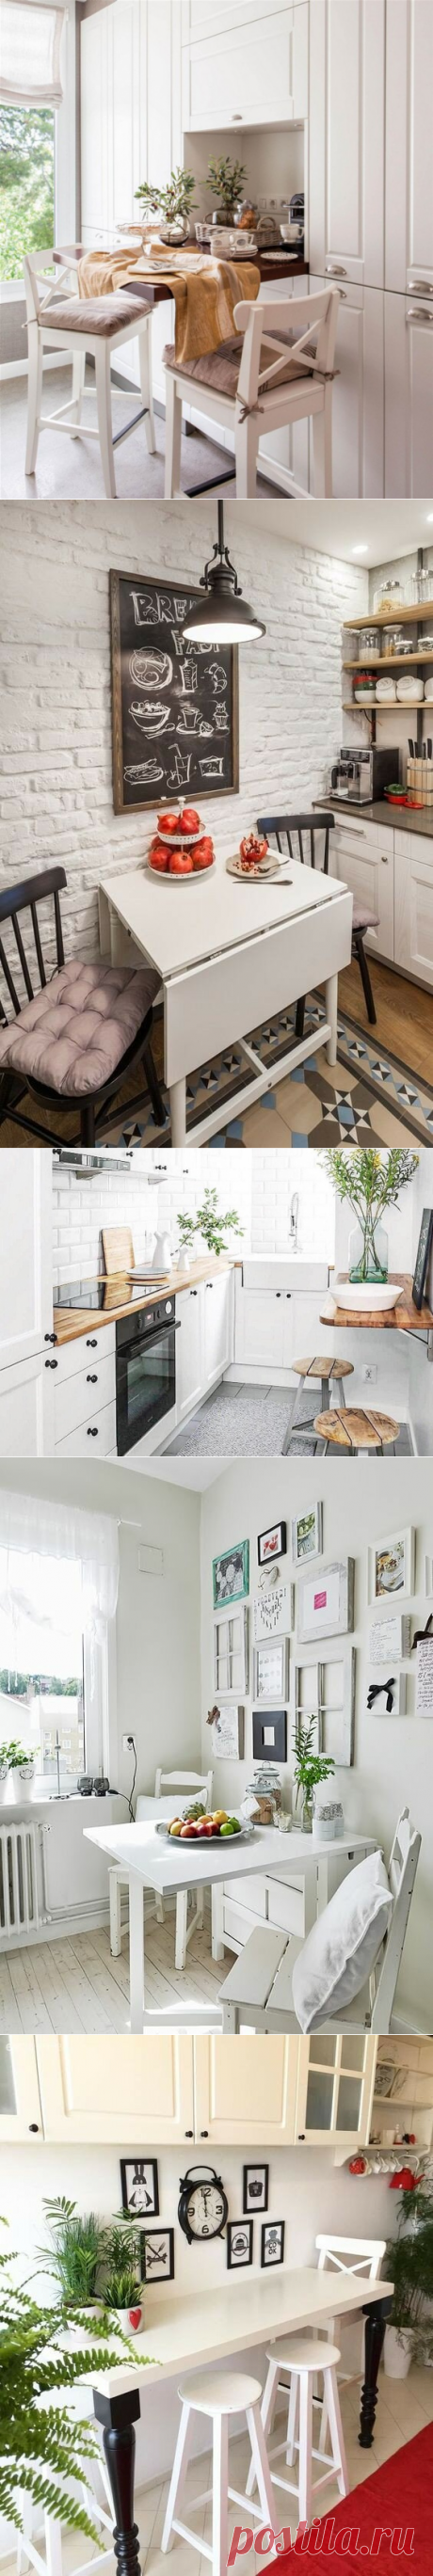 Обеденная зона для маленькой кухни 5-7 кв: подборка самых практичных решений (20 фото) | СЕКРЕТЫ КУХНИ | Яндекс Дзен